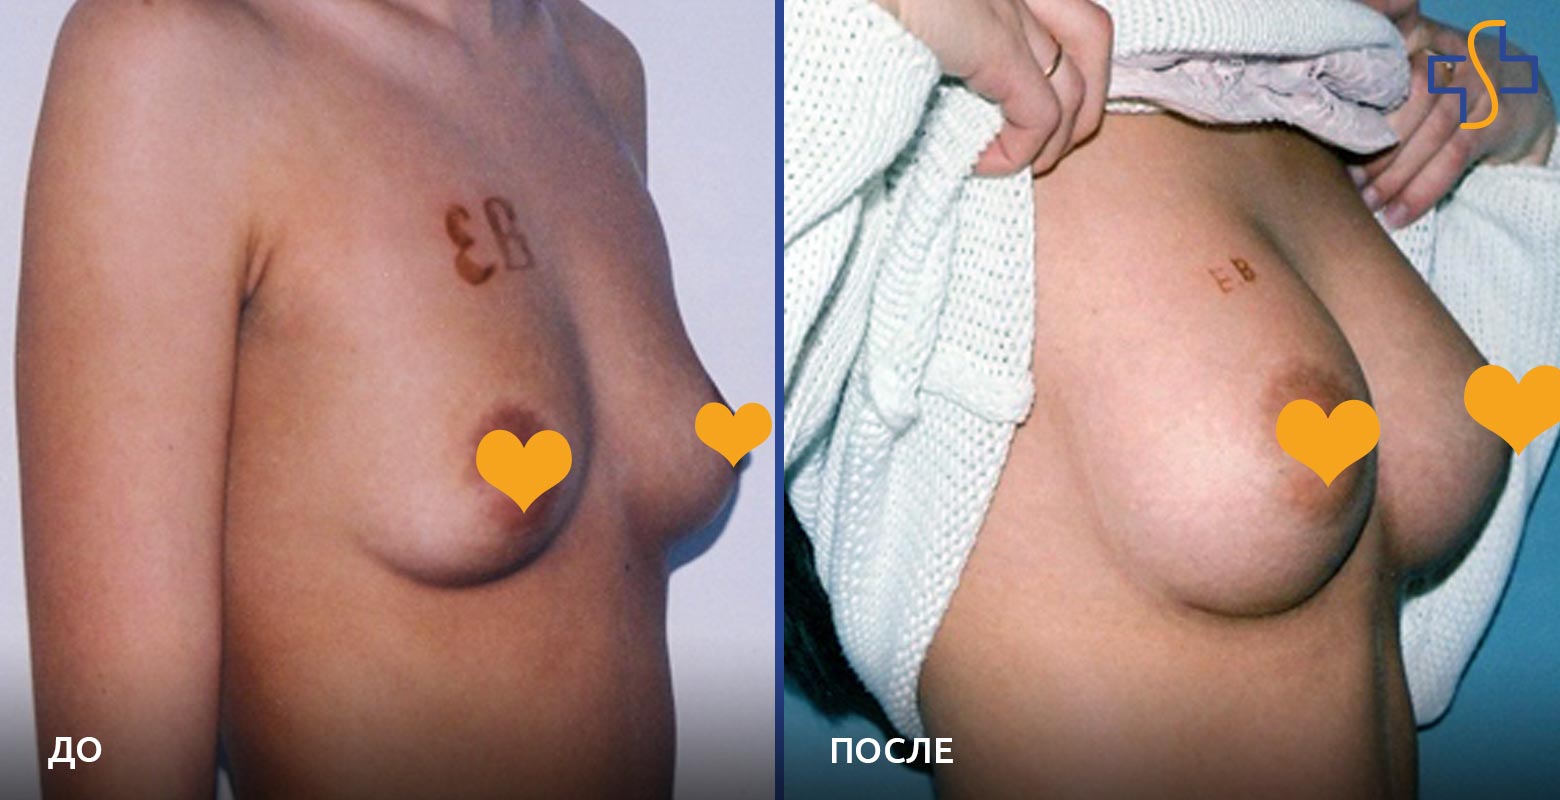 фото до и после операции по увеличению молочных желез